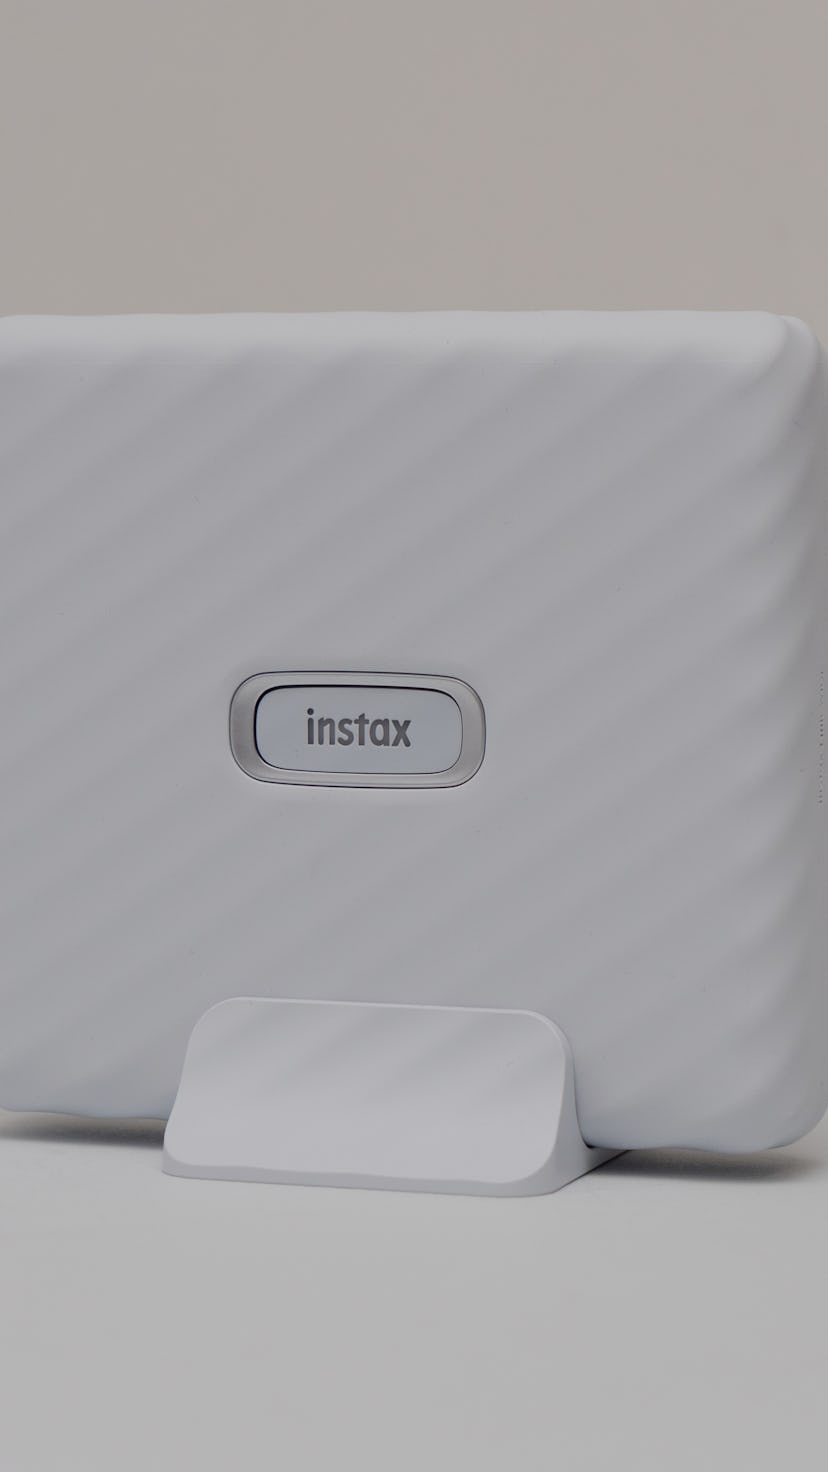 An Instax Link Wide printer